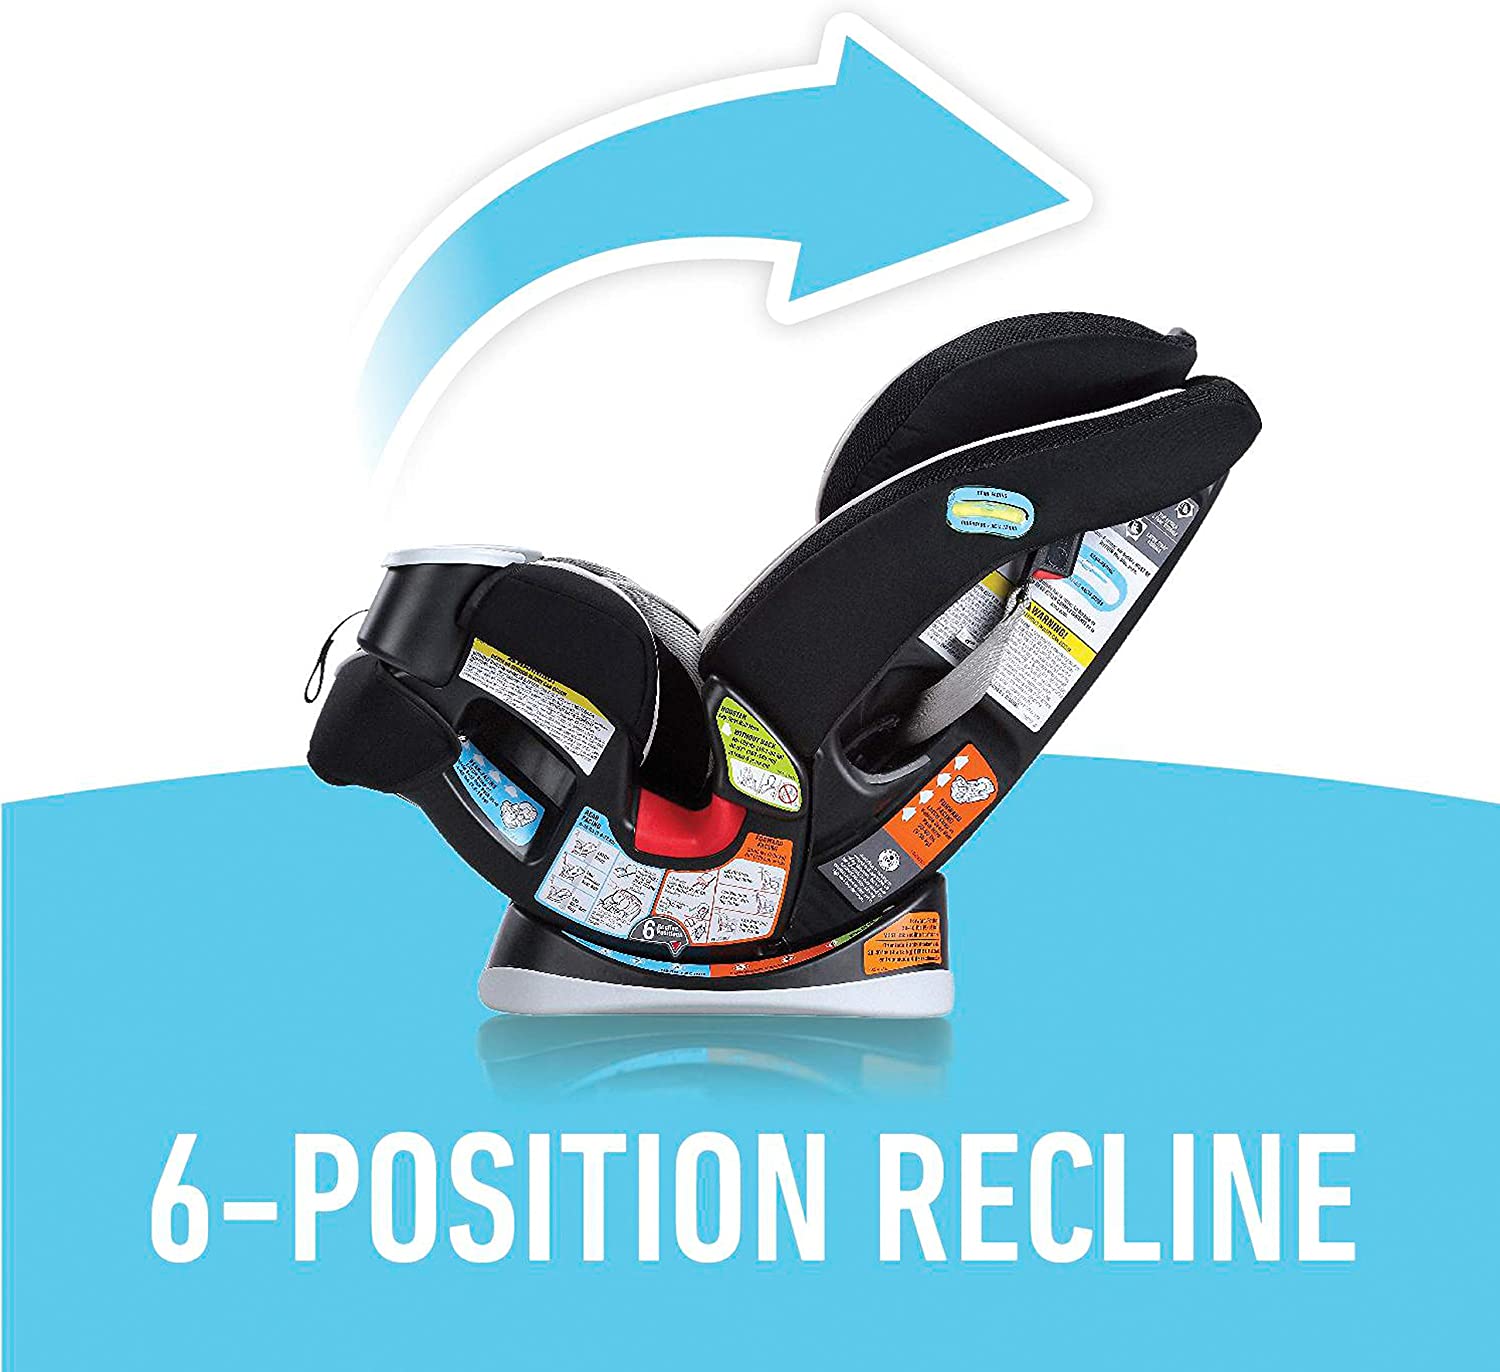 Graco 4Ever 4-In-1 Car Seat – Bô-Bébé Magasin pour bébé